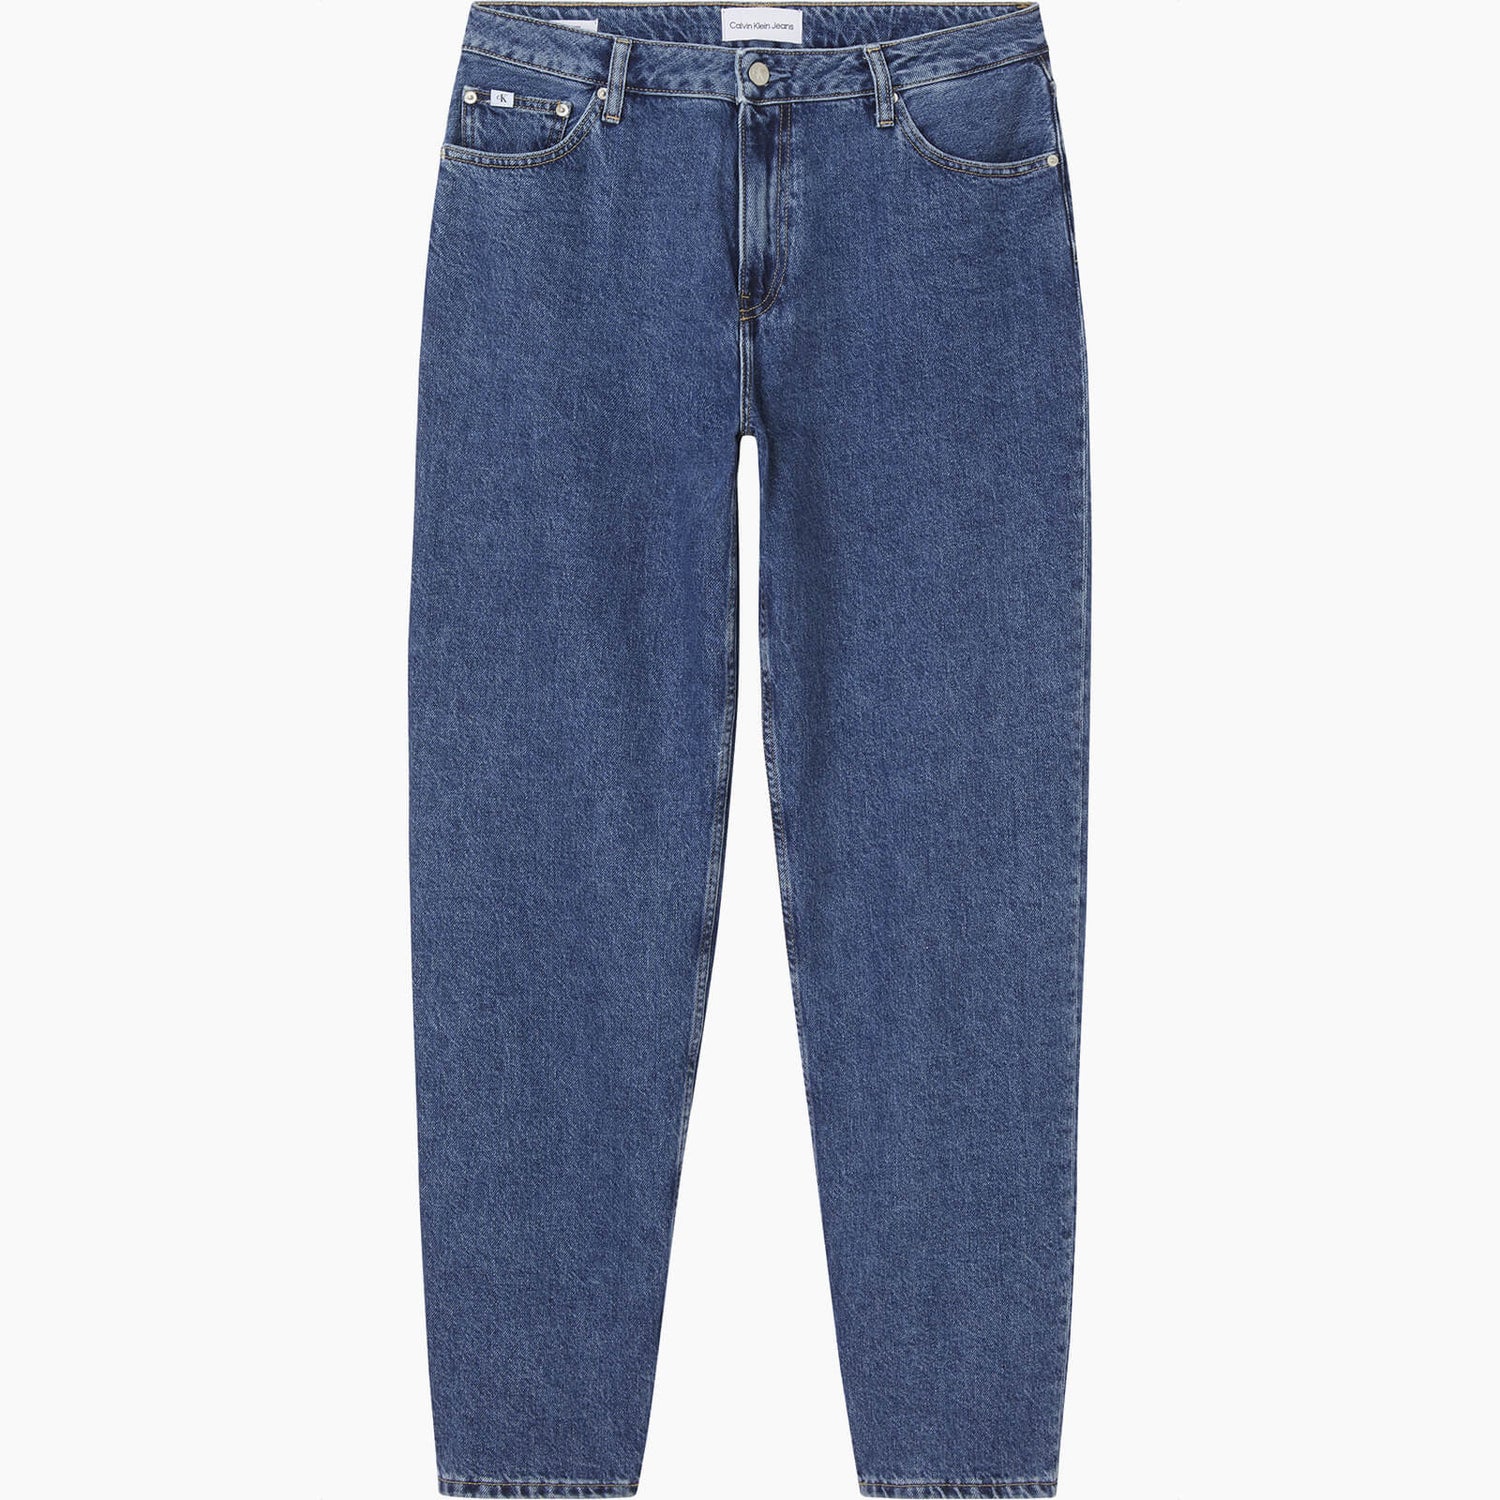 Calvin Klein Jeans Women's 90'S Straight Jeans - Denim Medium - W28